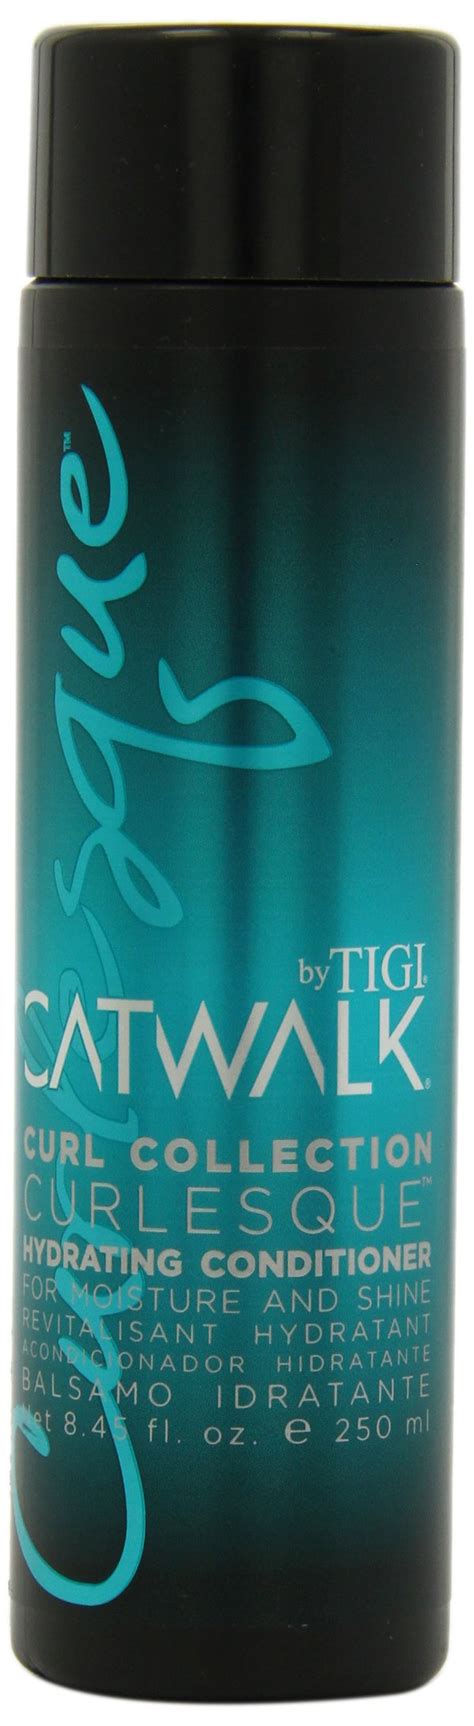 Tigi Catwalk Curl Collection Curlesque